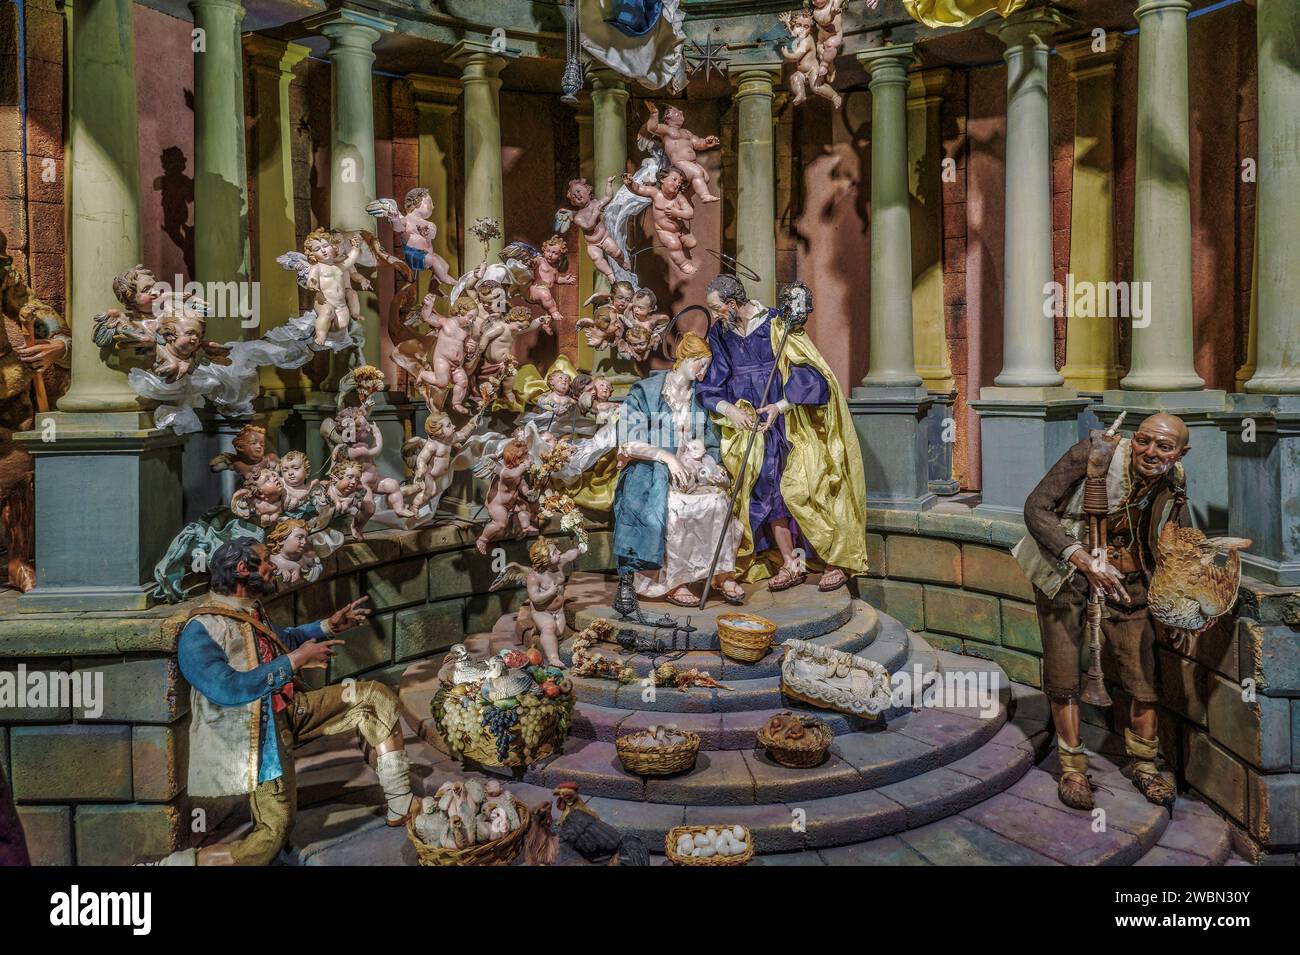 Scènes du 18e siècle scène de nativité napolitaine dans le bâtiment du musée du sculpteur Francisco Salzillo dans la ville de Murcie, Espagne, Europe Banque D'Images